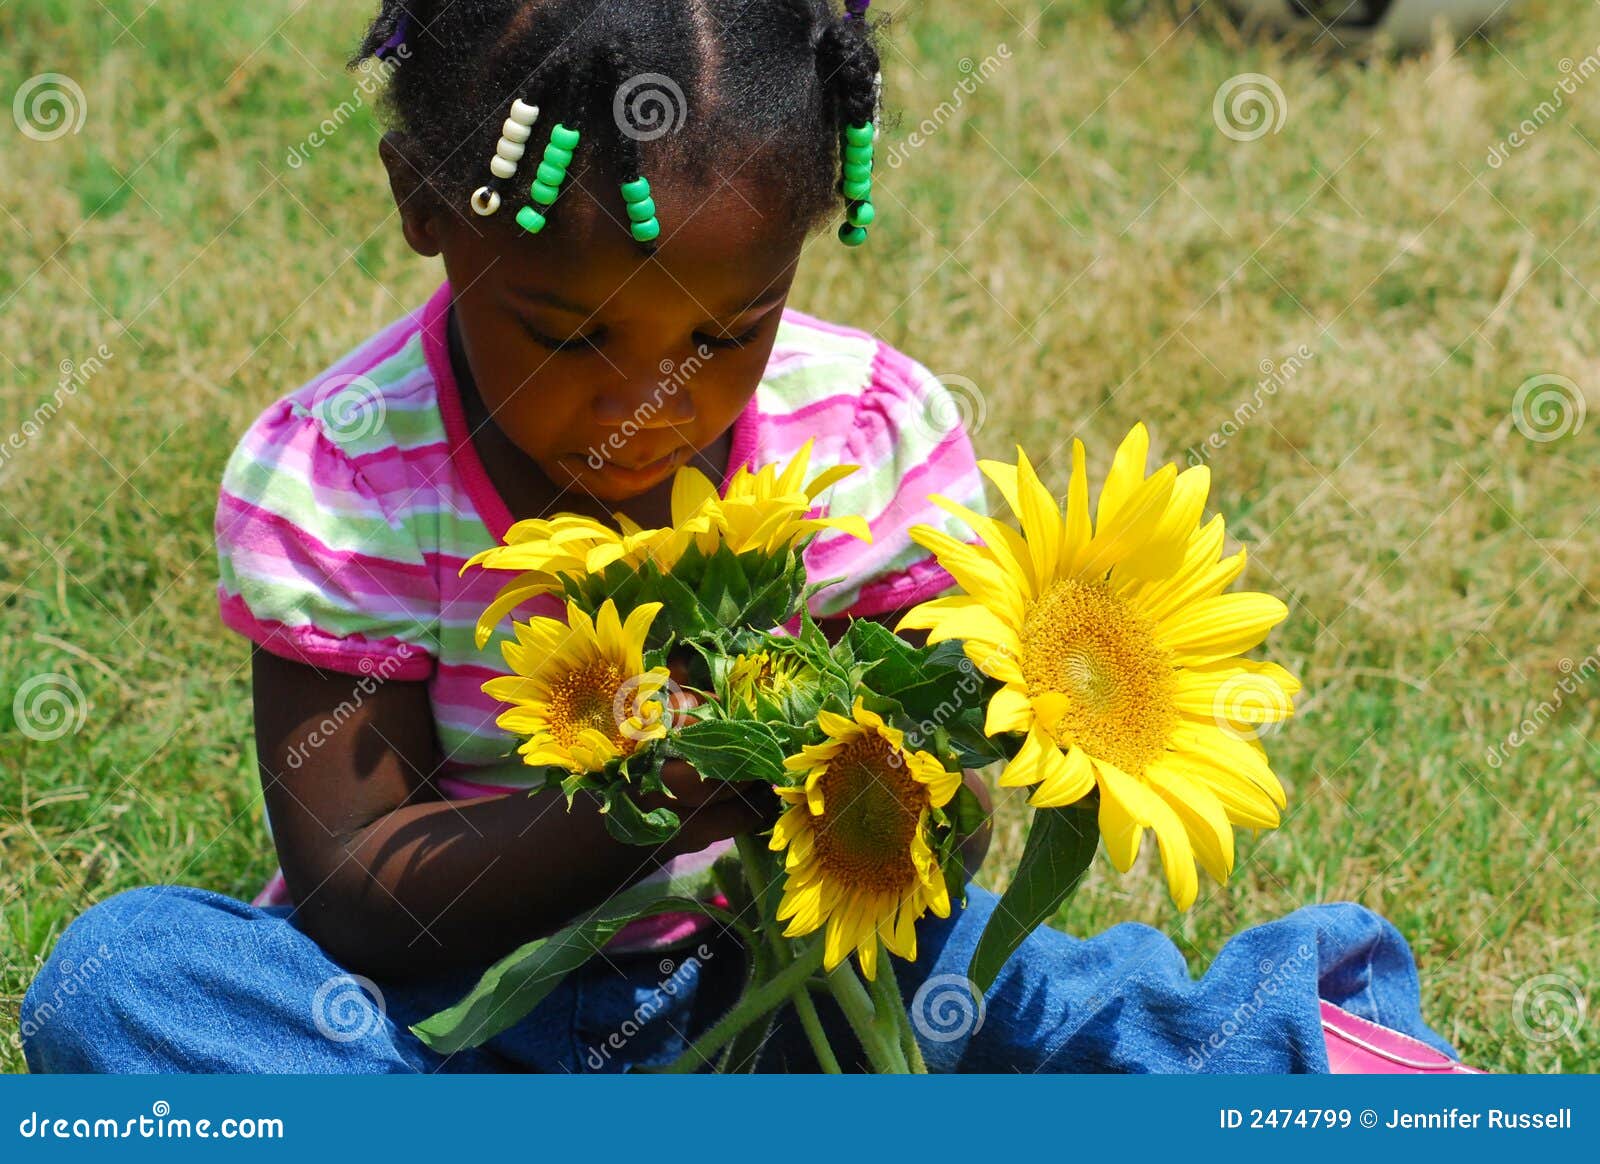 Flores del verano. Una chica joven sostiene un puñado de girasoles mientras que ella mira abajo y huele la <a href="http://www.dreamstime.com/multiracial-children-rcollection6947-resi227445" STYLE="font-size:13px; text-decoration: blink; color:#FF0000"><b>colección multirracial</b></a> themMy de los <a href="http://www.dreamstime.com/multiracial-children-rcollection6947-resi227445" STYLE="font-size:13px; text-decoration: blink; color:#FF0000"><b>niños?</b></a>